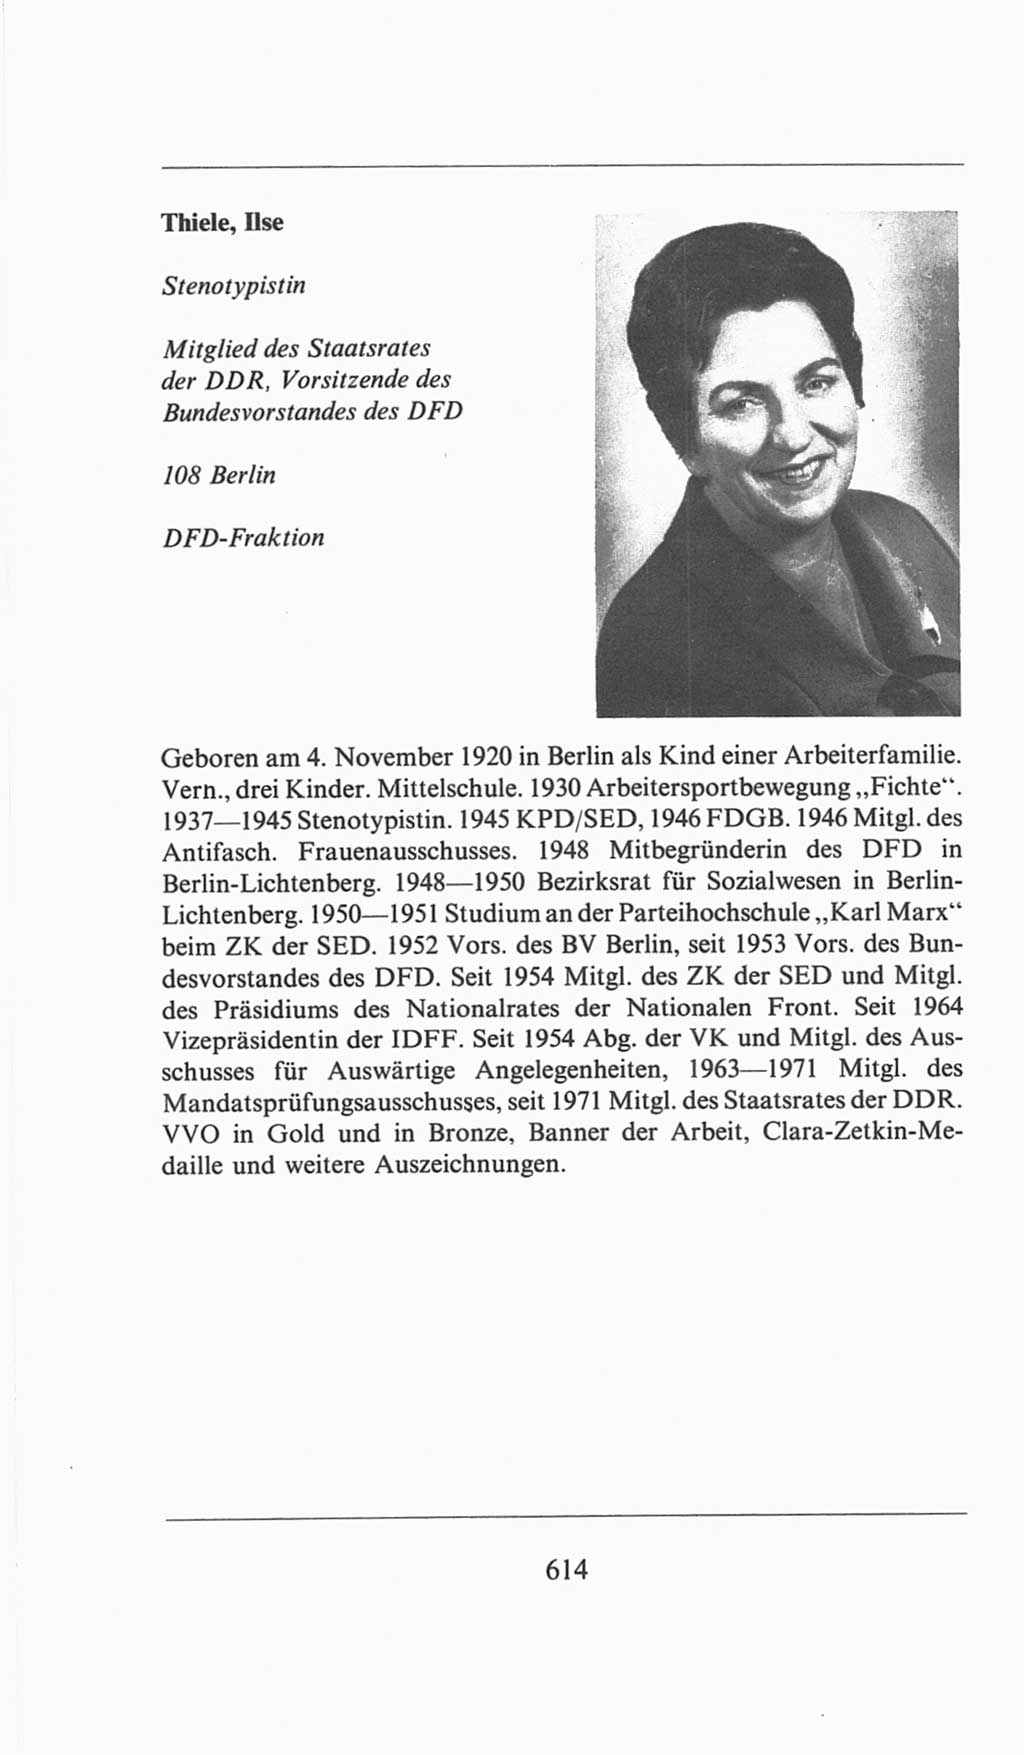 Volkskammer (VK) der Deutschen Demokratischen Republik (DDR), 6. Wahlperiode 1971-1976, Seite 614 (VK. DDR 6. WP. 1971-1976, S. 614)